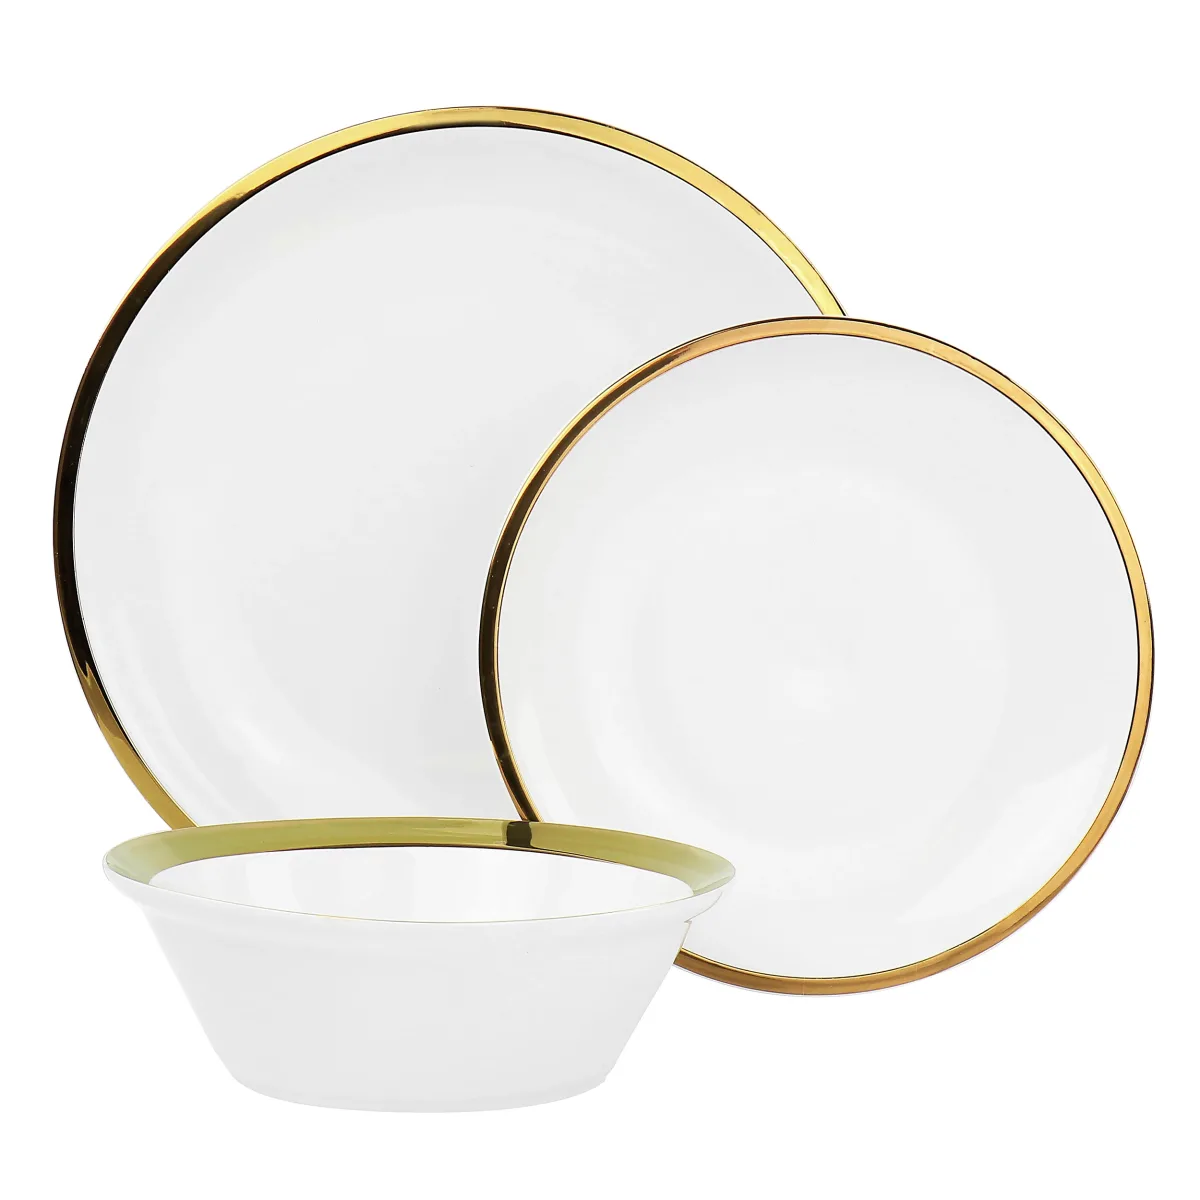 Dinnerware Round Plate White Gold Rim 2